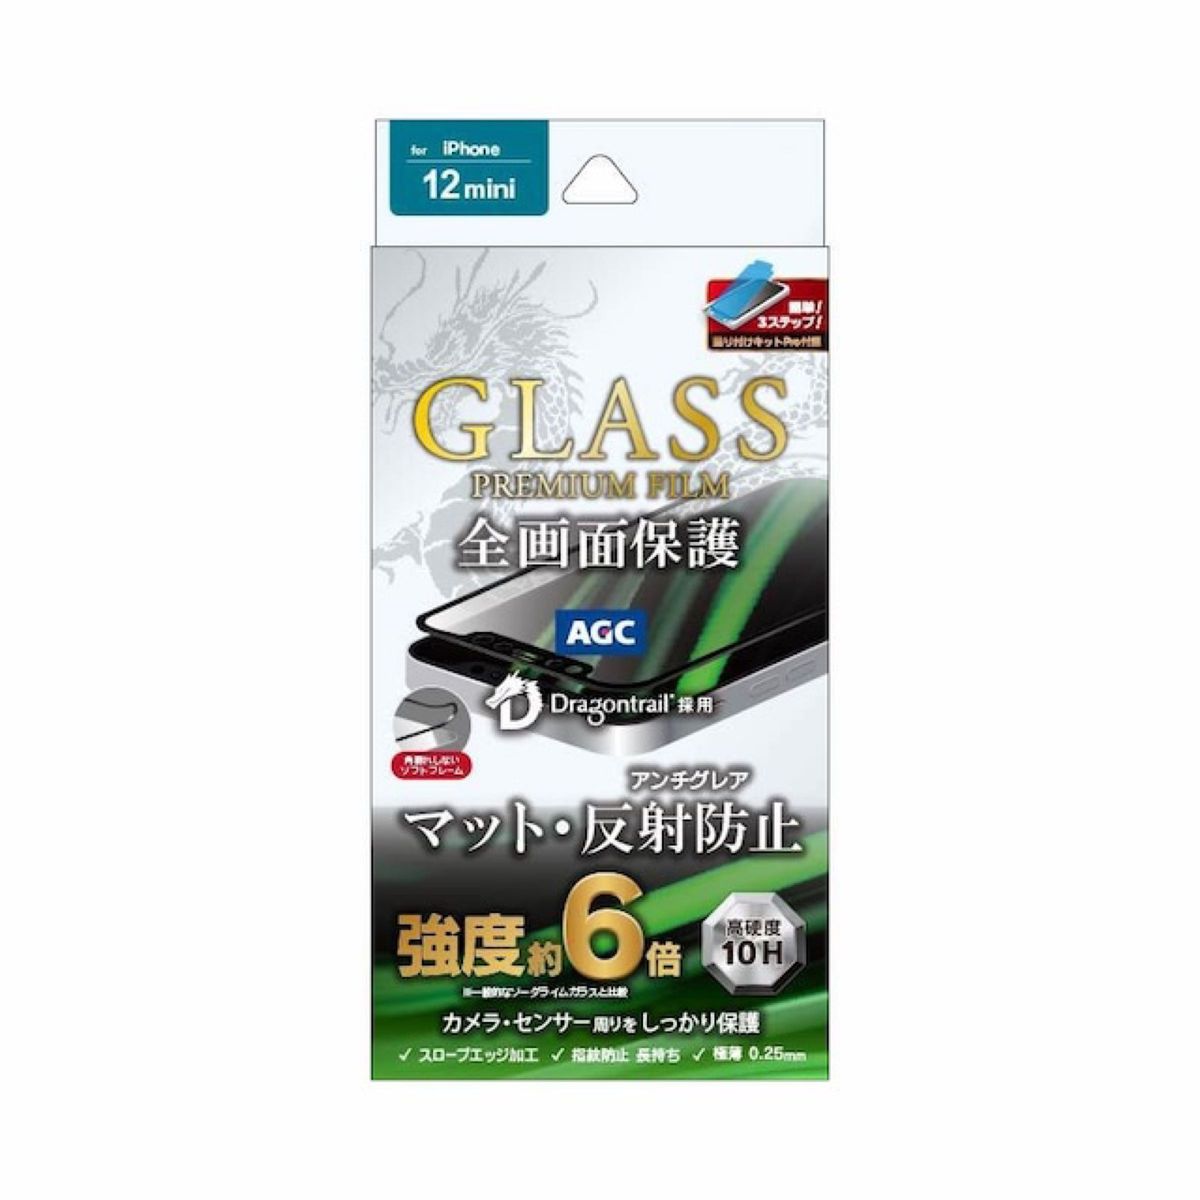 iPhone 12 mini ガラスフィルム「GLASS PREMIUM FILM」 ドラゴントレイル 全画面保護 ソフトフレーム